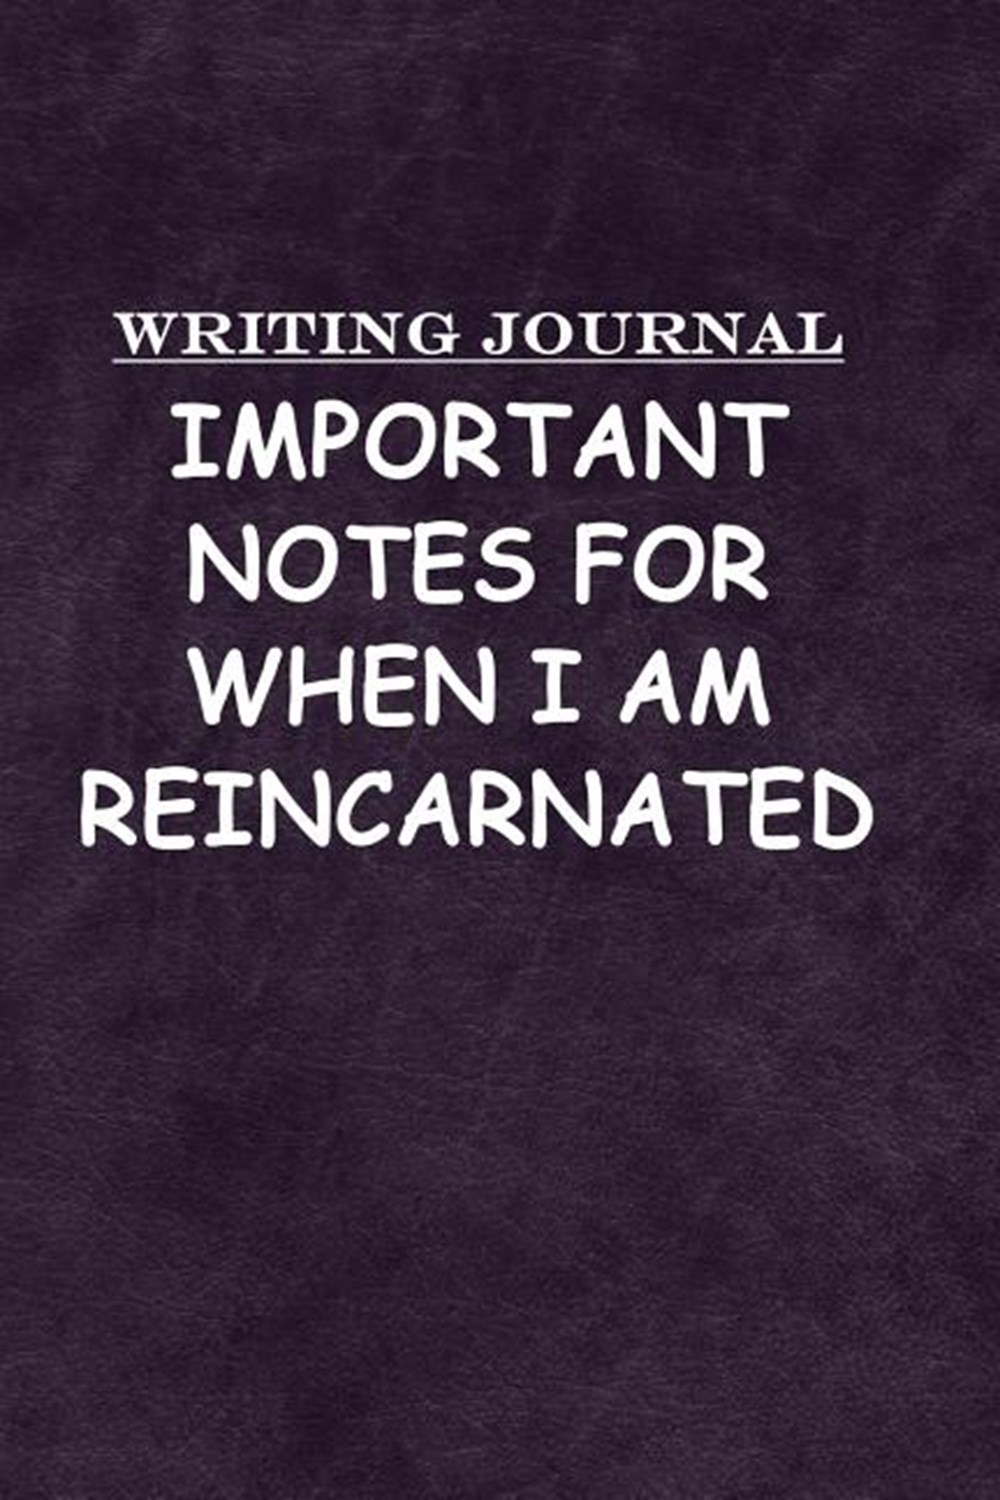 Writing Journal Karma What a Jerk: Journal Notebook